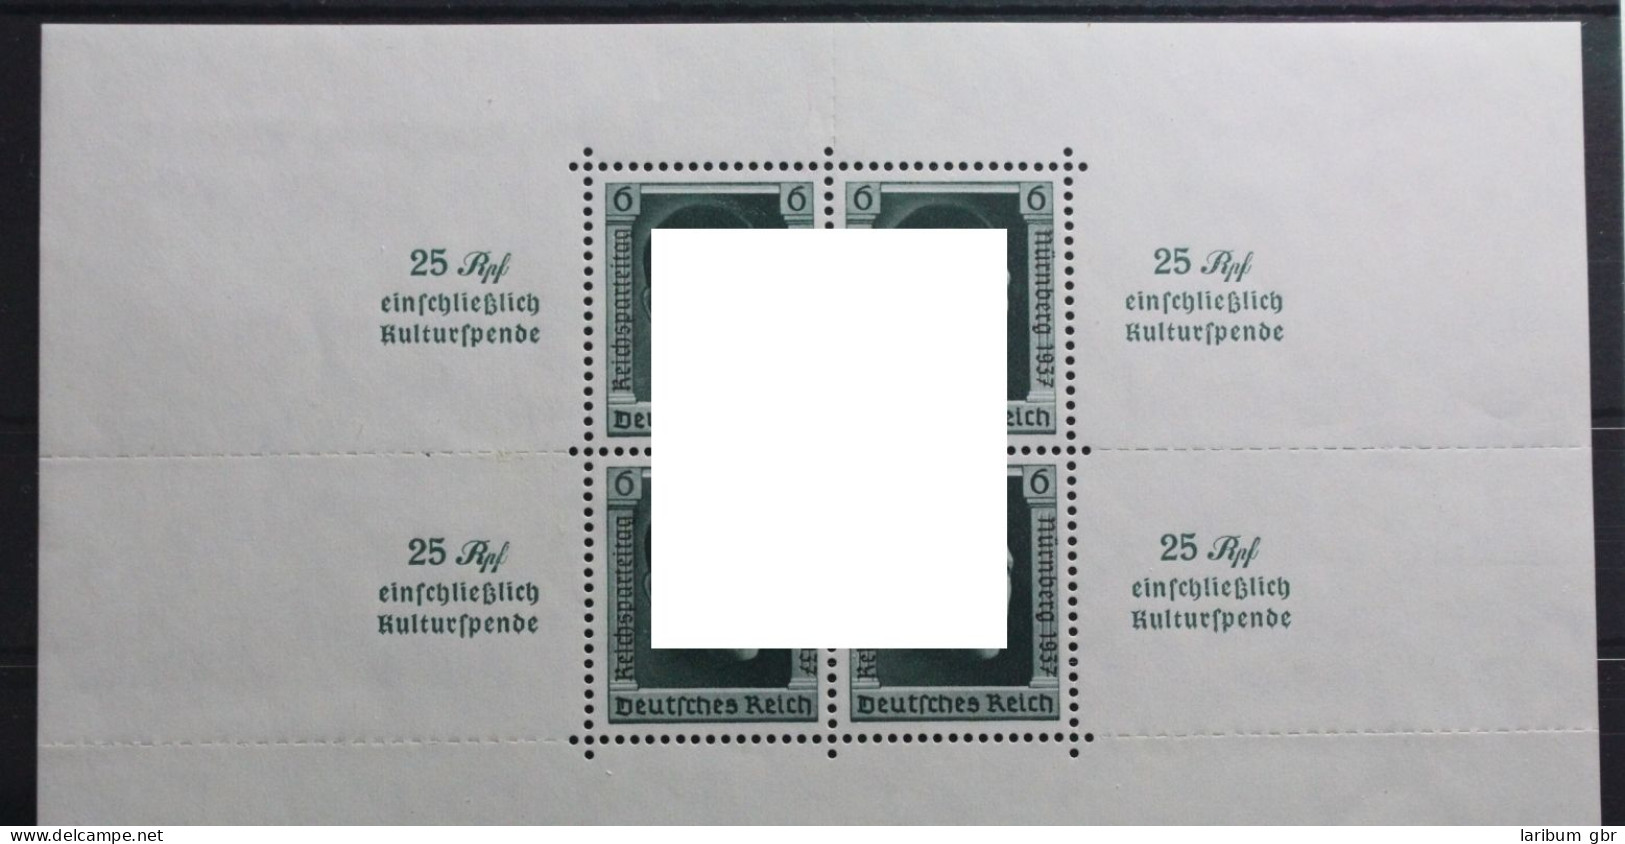 Deutsches Reich Block 11 Postfrisch 1 Marke Mit Anhaftung #UJ982 - Blocks & Kleinbögen